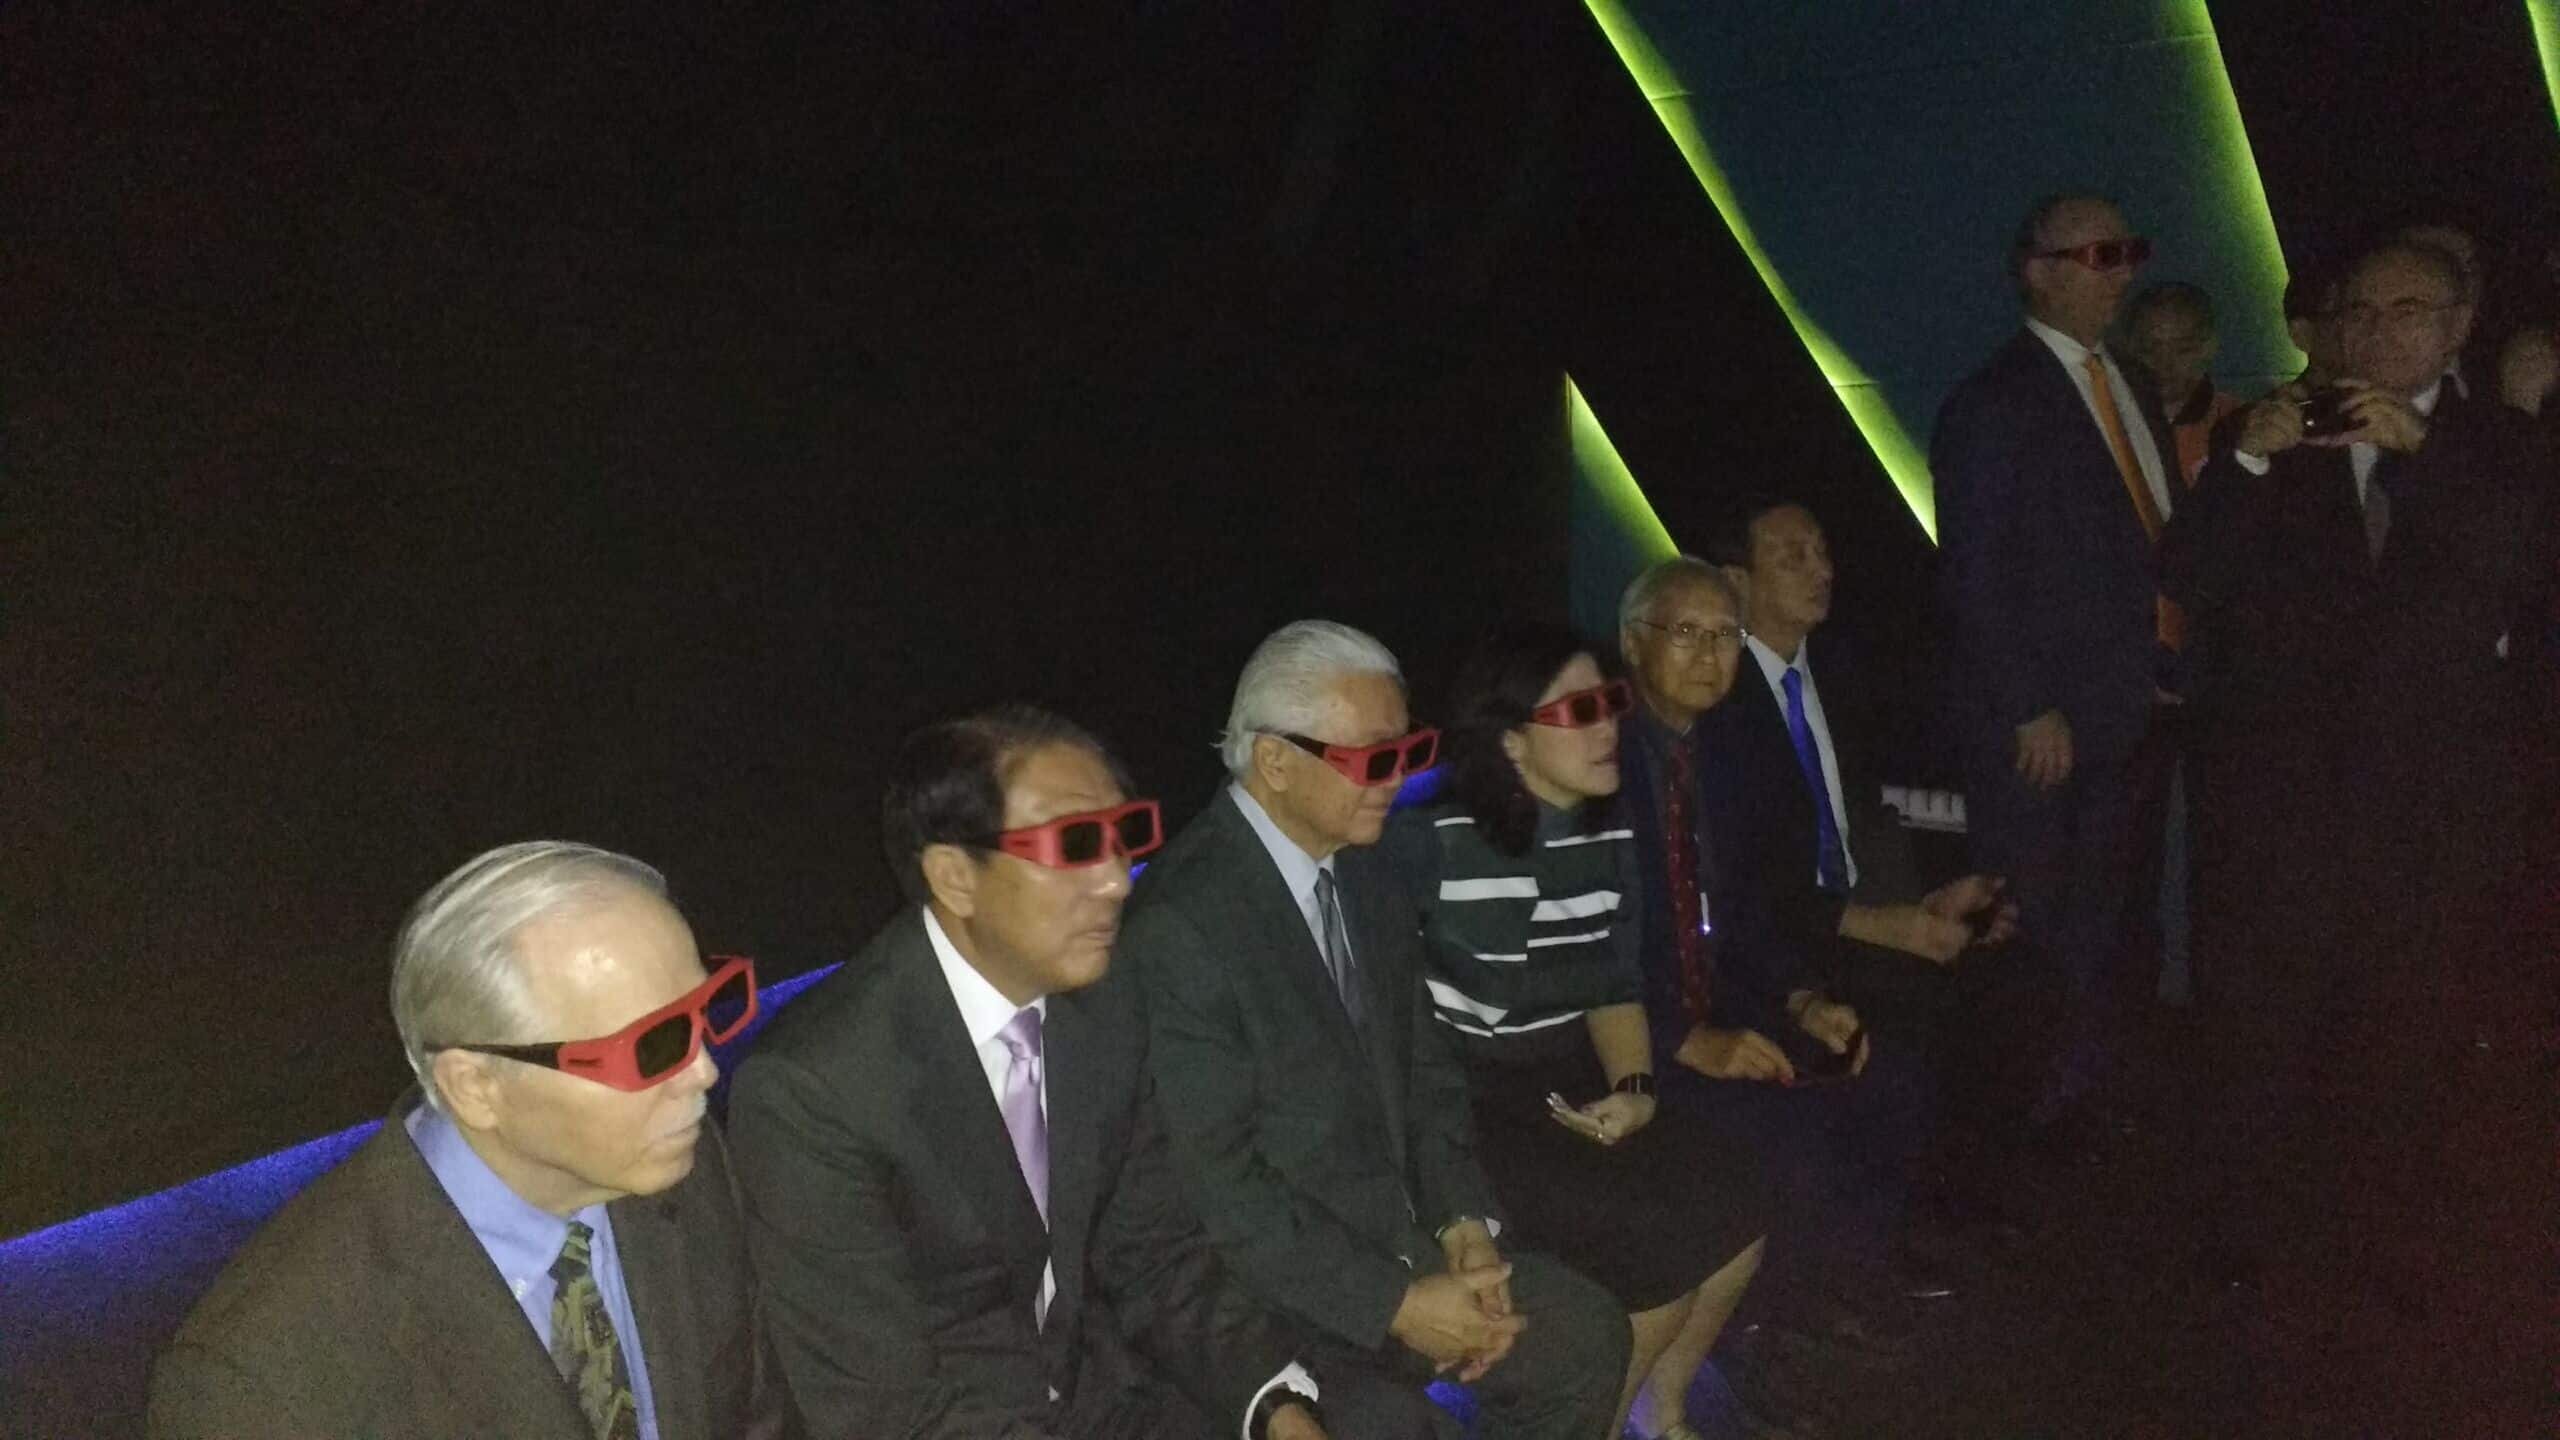 Besucher im Deep Space betrachten eine projizierte Virtual Reality-Umgebung mit 3D-Brillen